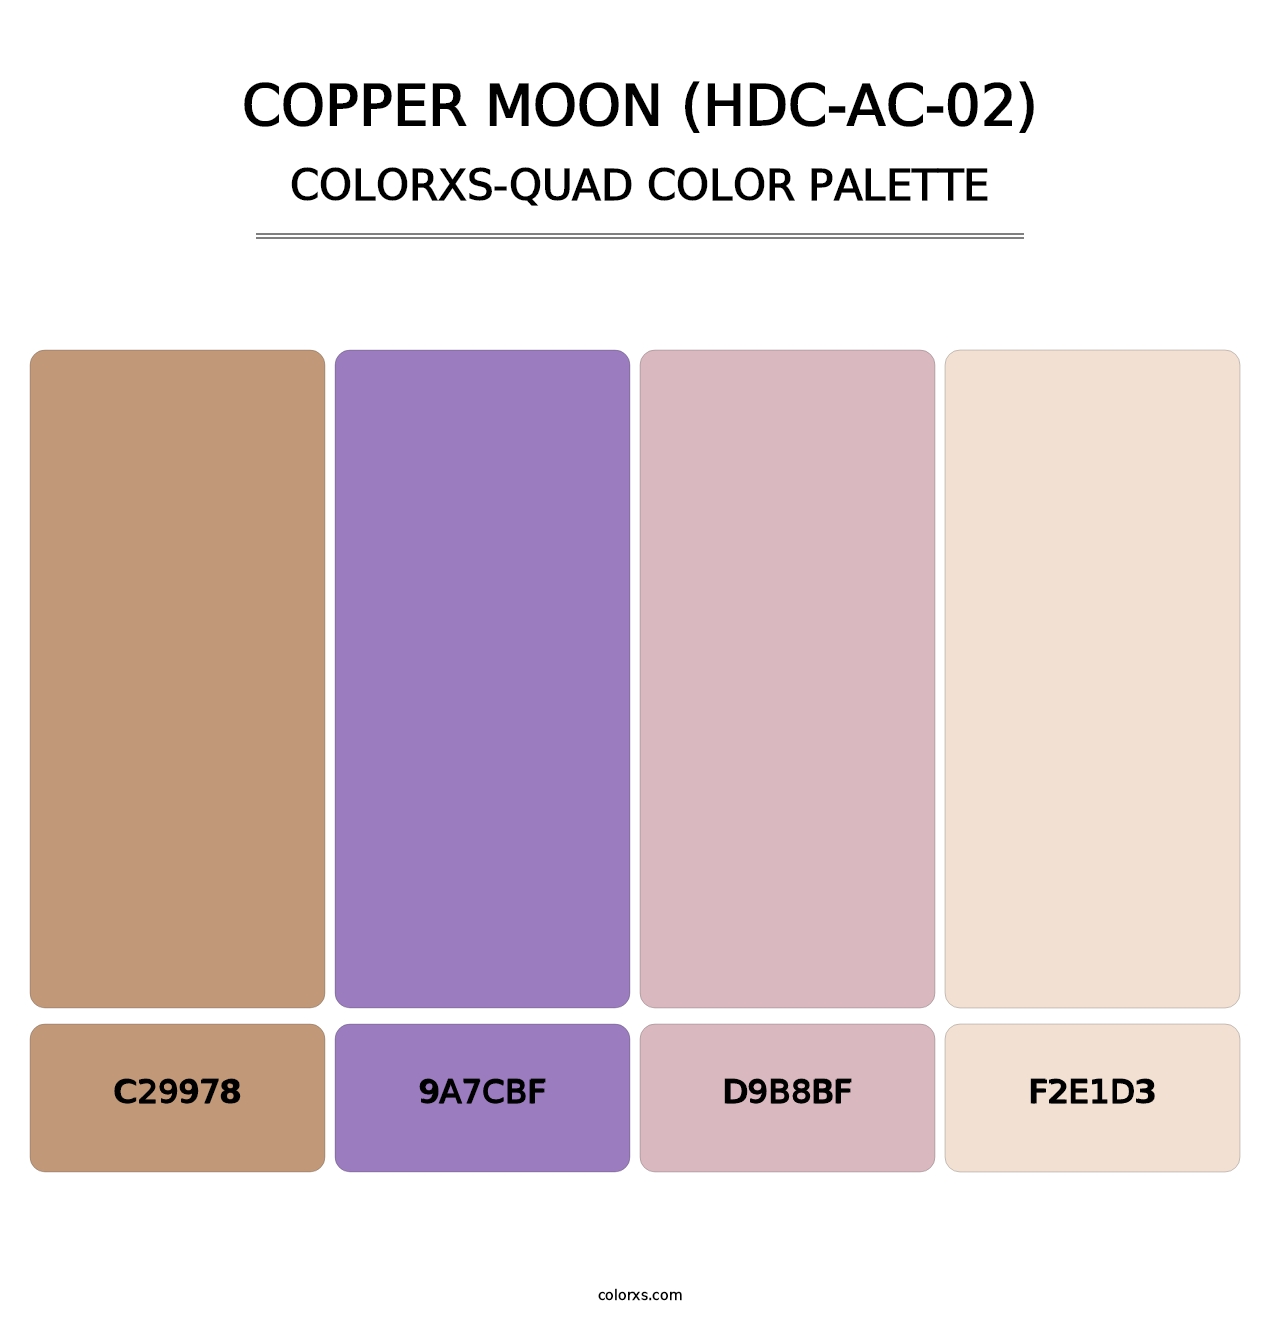 Copper Moon (HDC-AC-02) - Colorxs Quad Palette